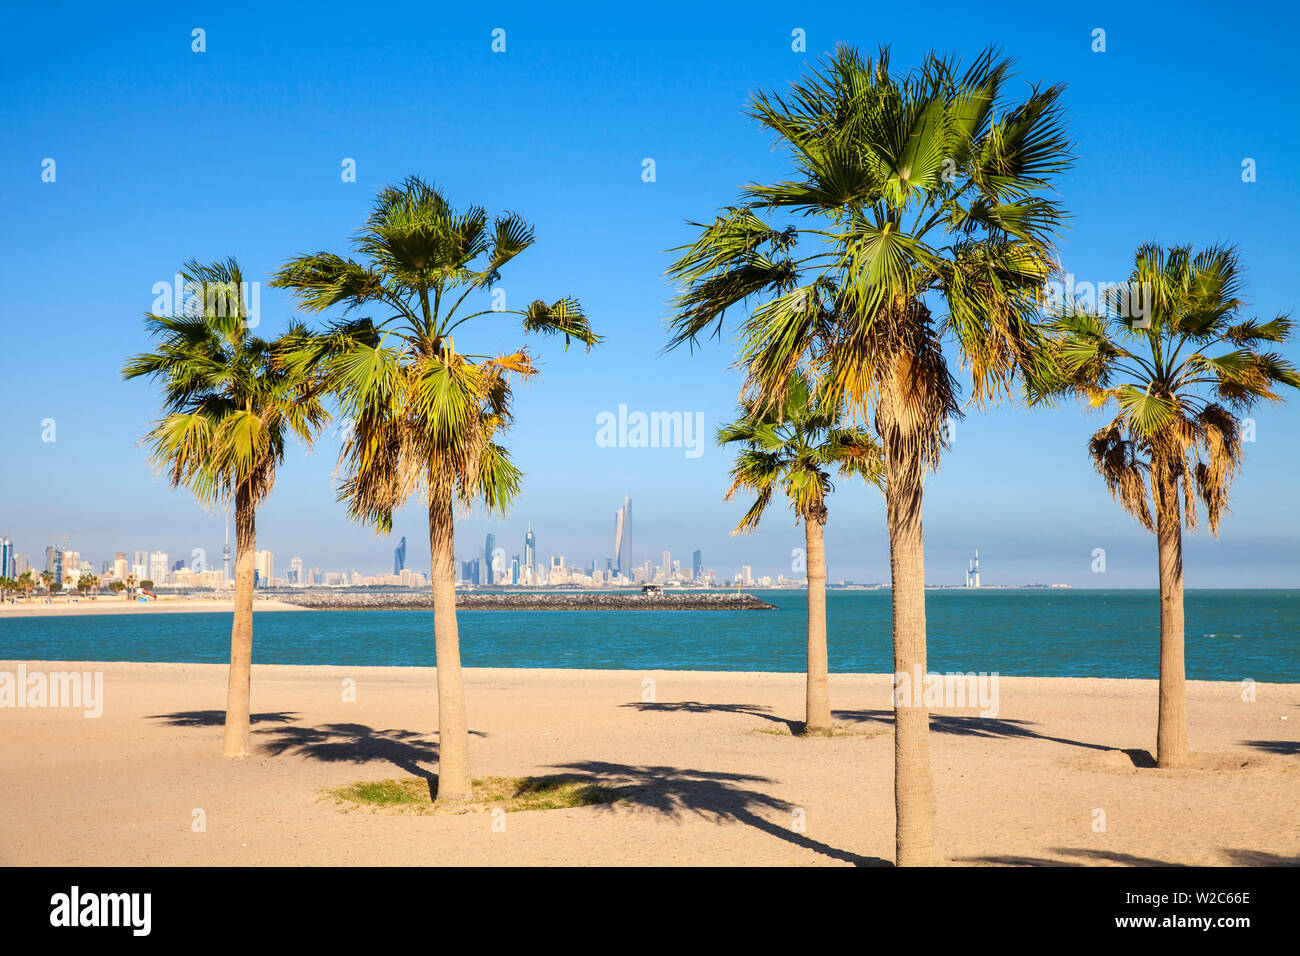 Kuwait, Kuwait City, Salmiya, Palm beach with city skyline in background Stock Photo